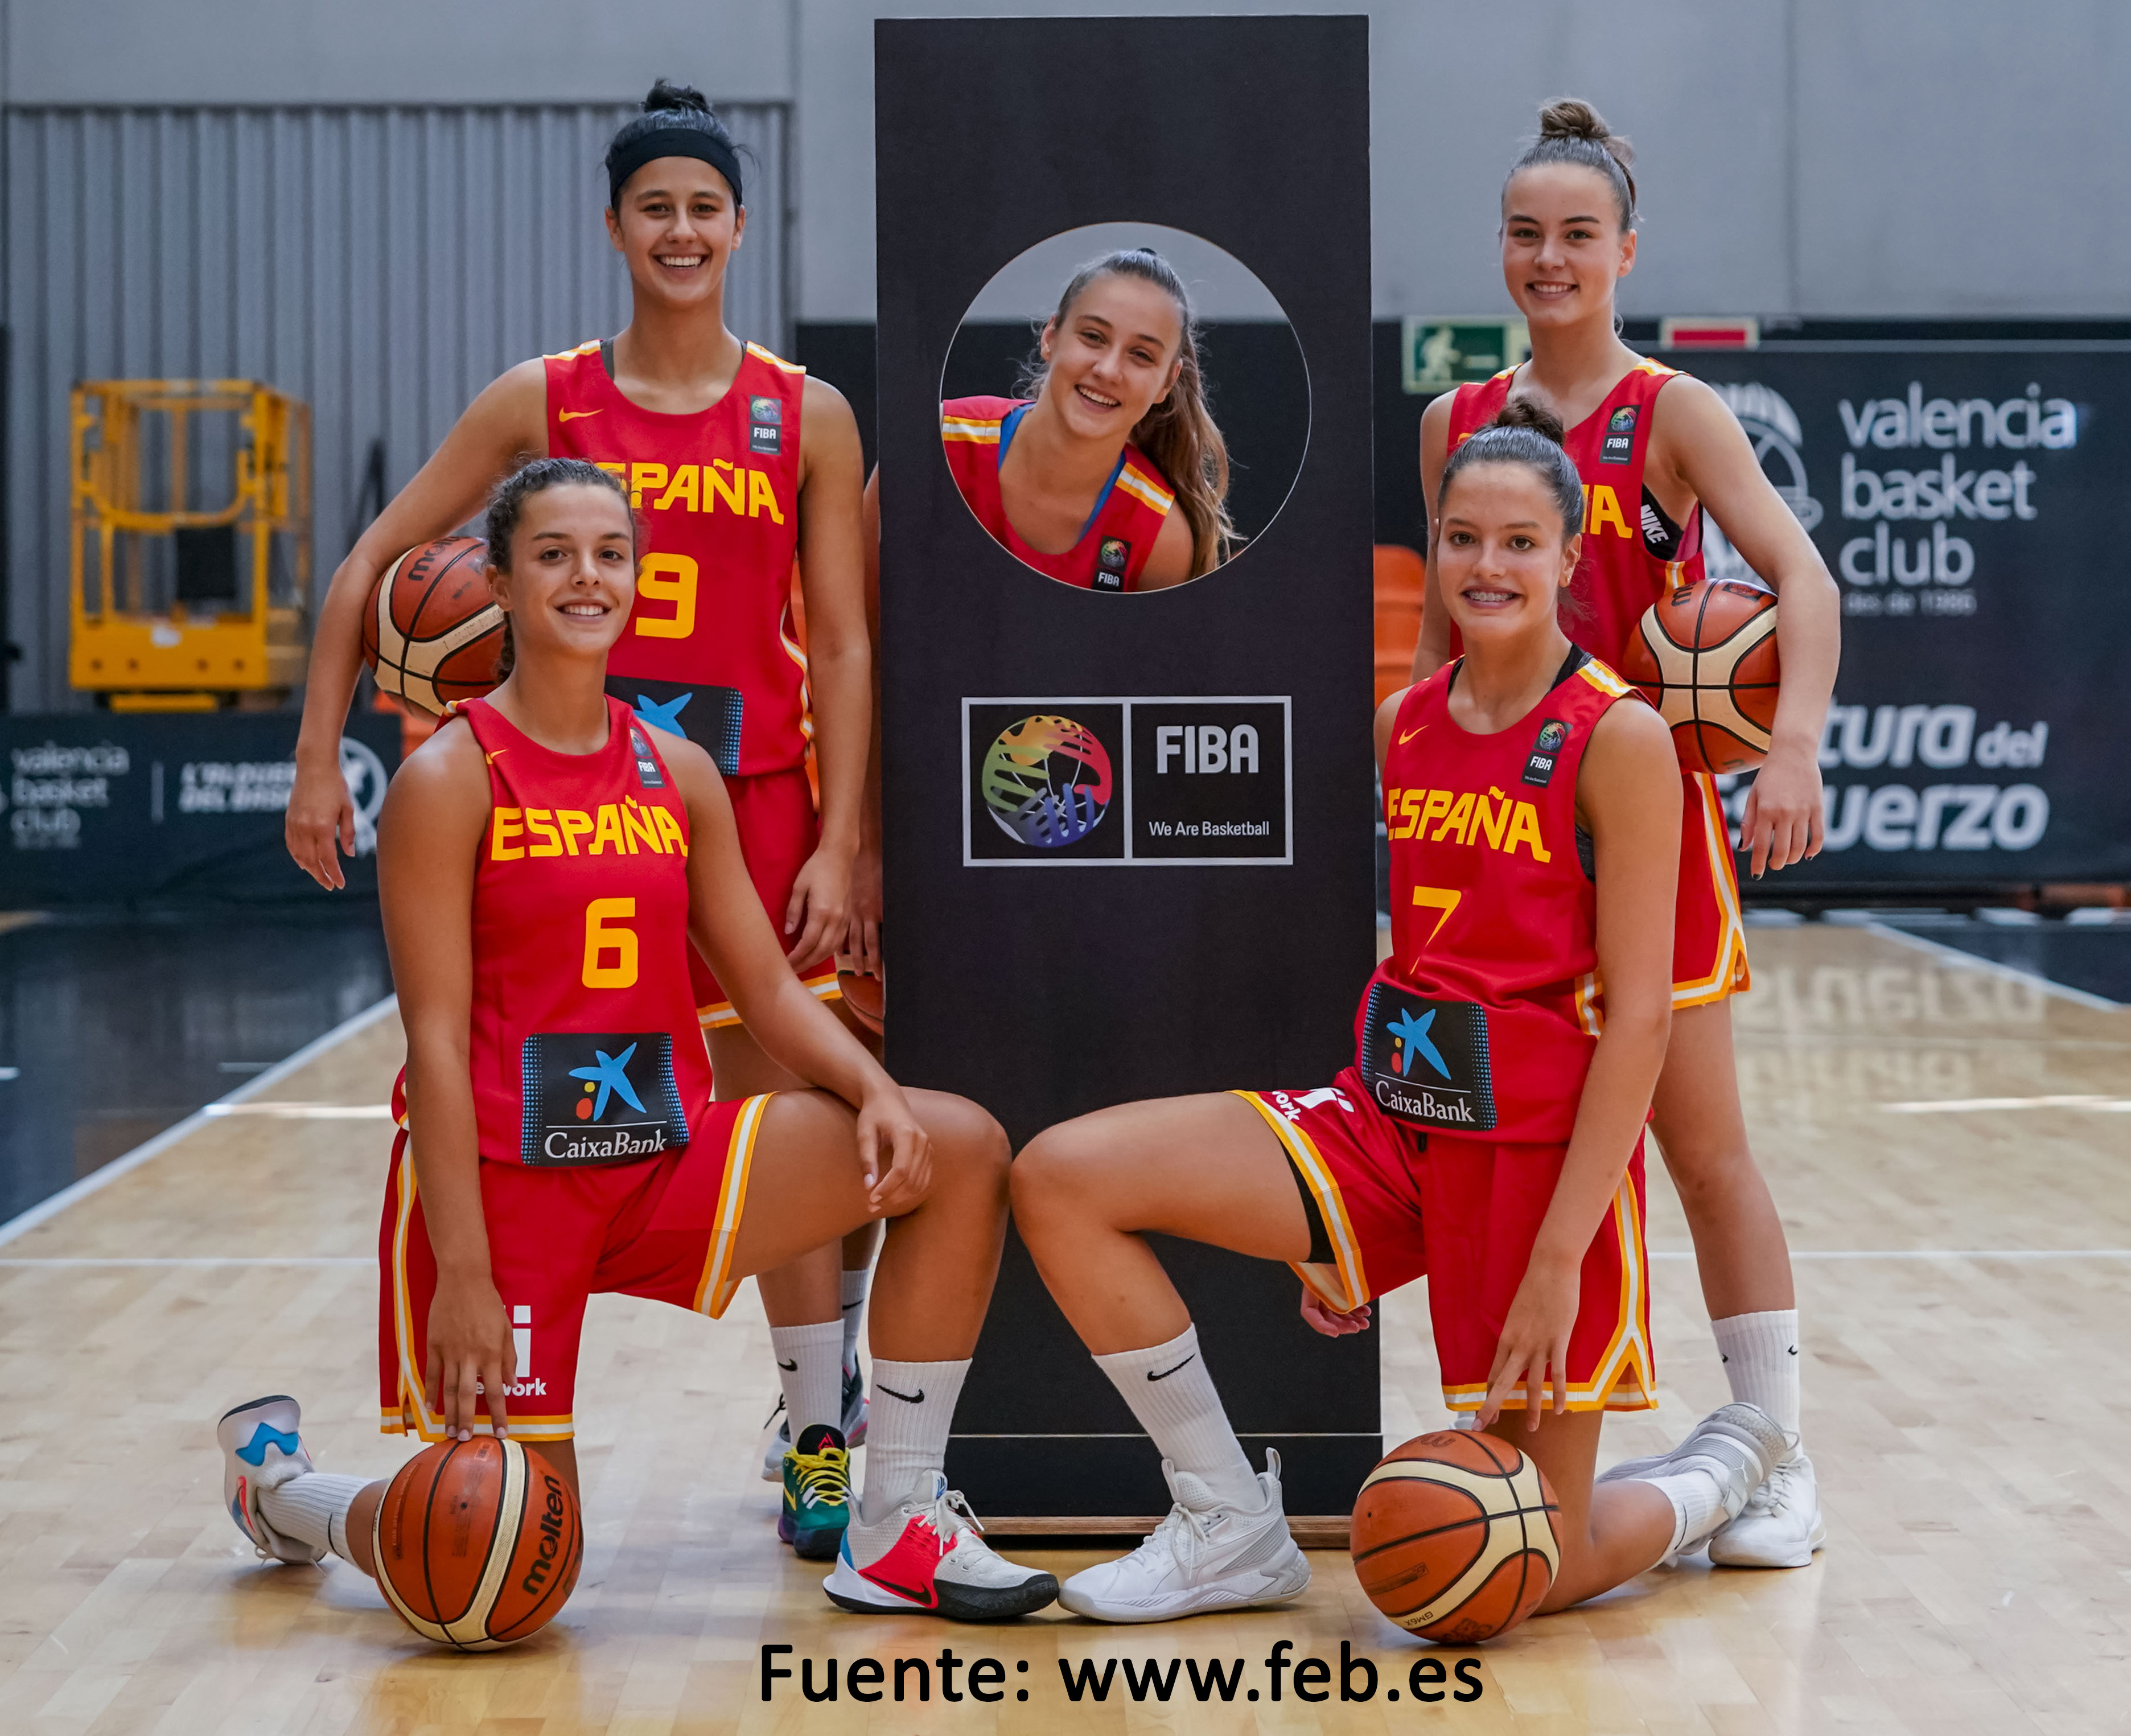 La A. A. Inés Noguero Outeiral (p 2022) medalla de habilidad en el FIBA Skills Challenge